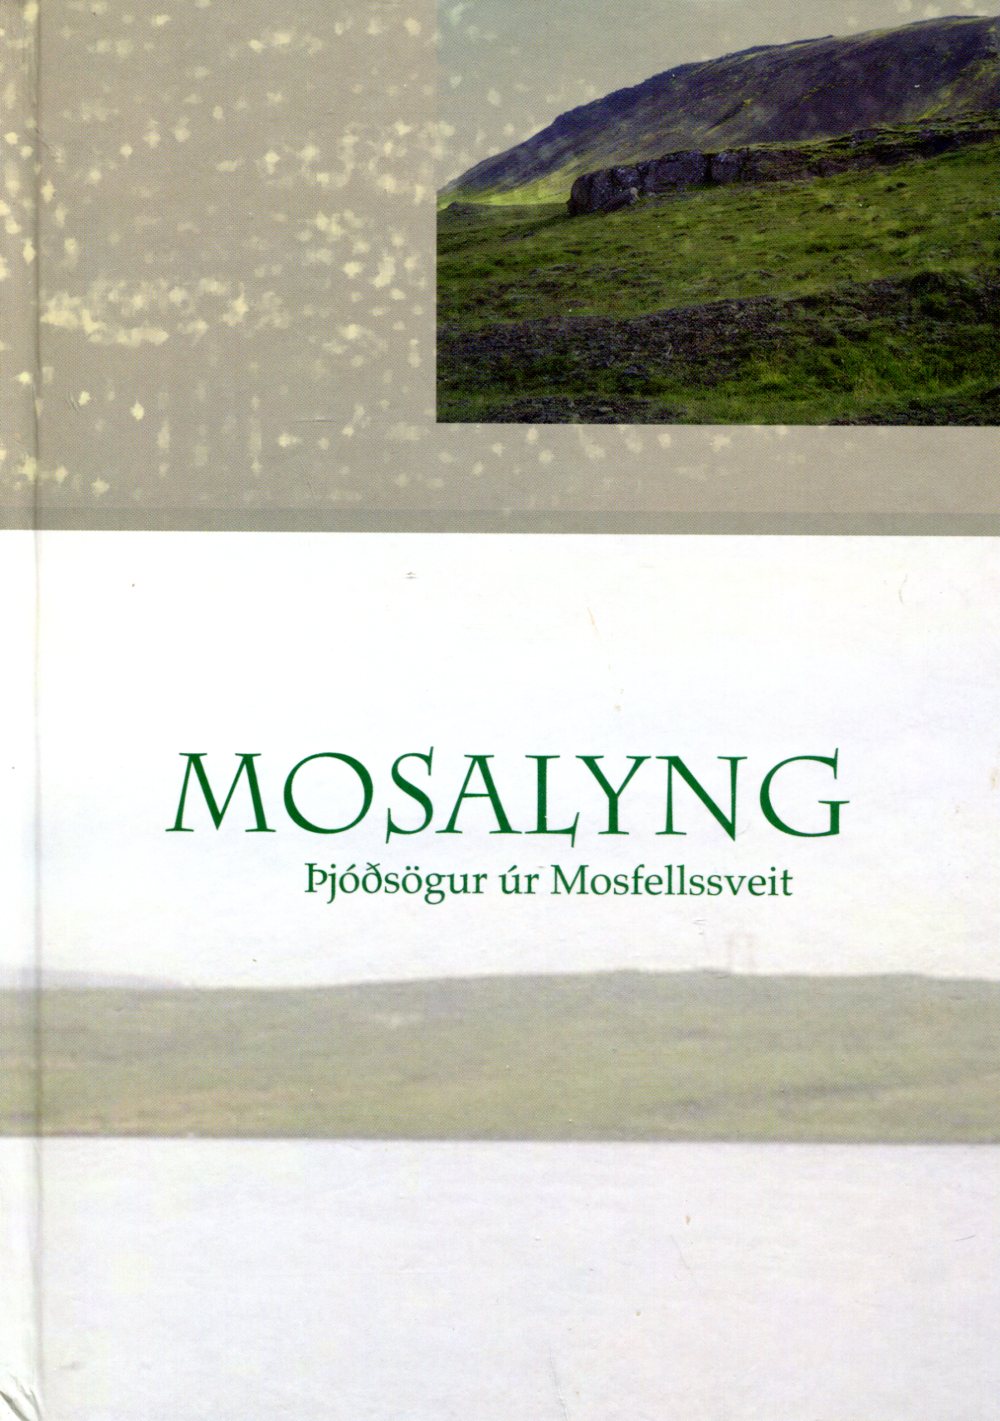 Mosalyng þjóðsögur úr Mosfellssveit - Bjarki Bjarnason og Þórdís Edda Guðjónsdóttir - Sögufélag Kjalarnesþings 2007